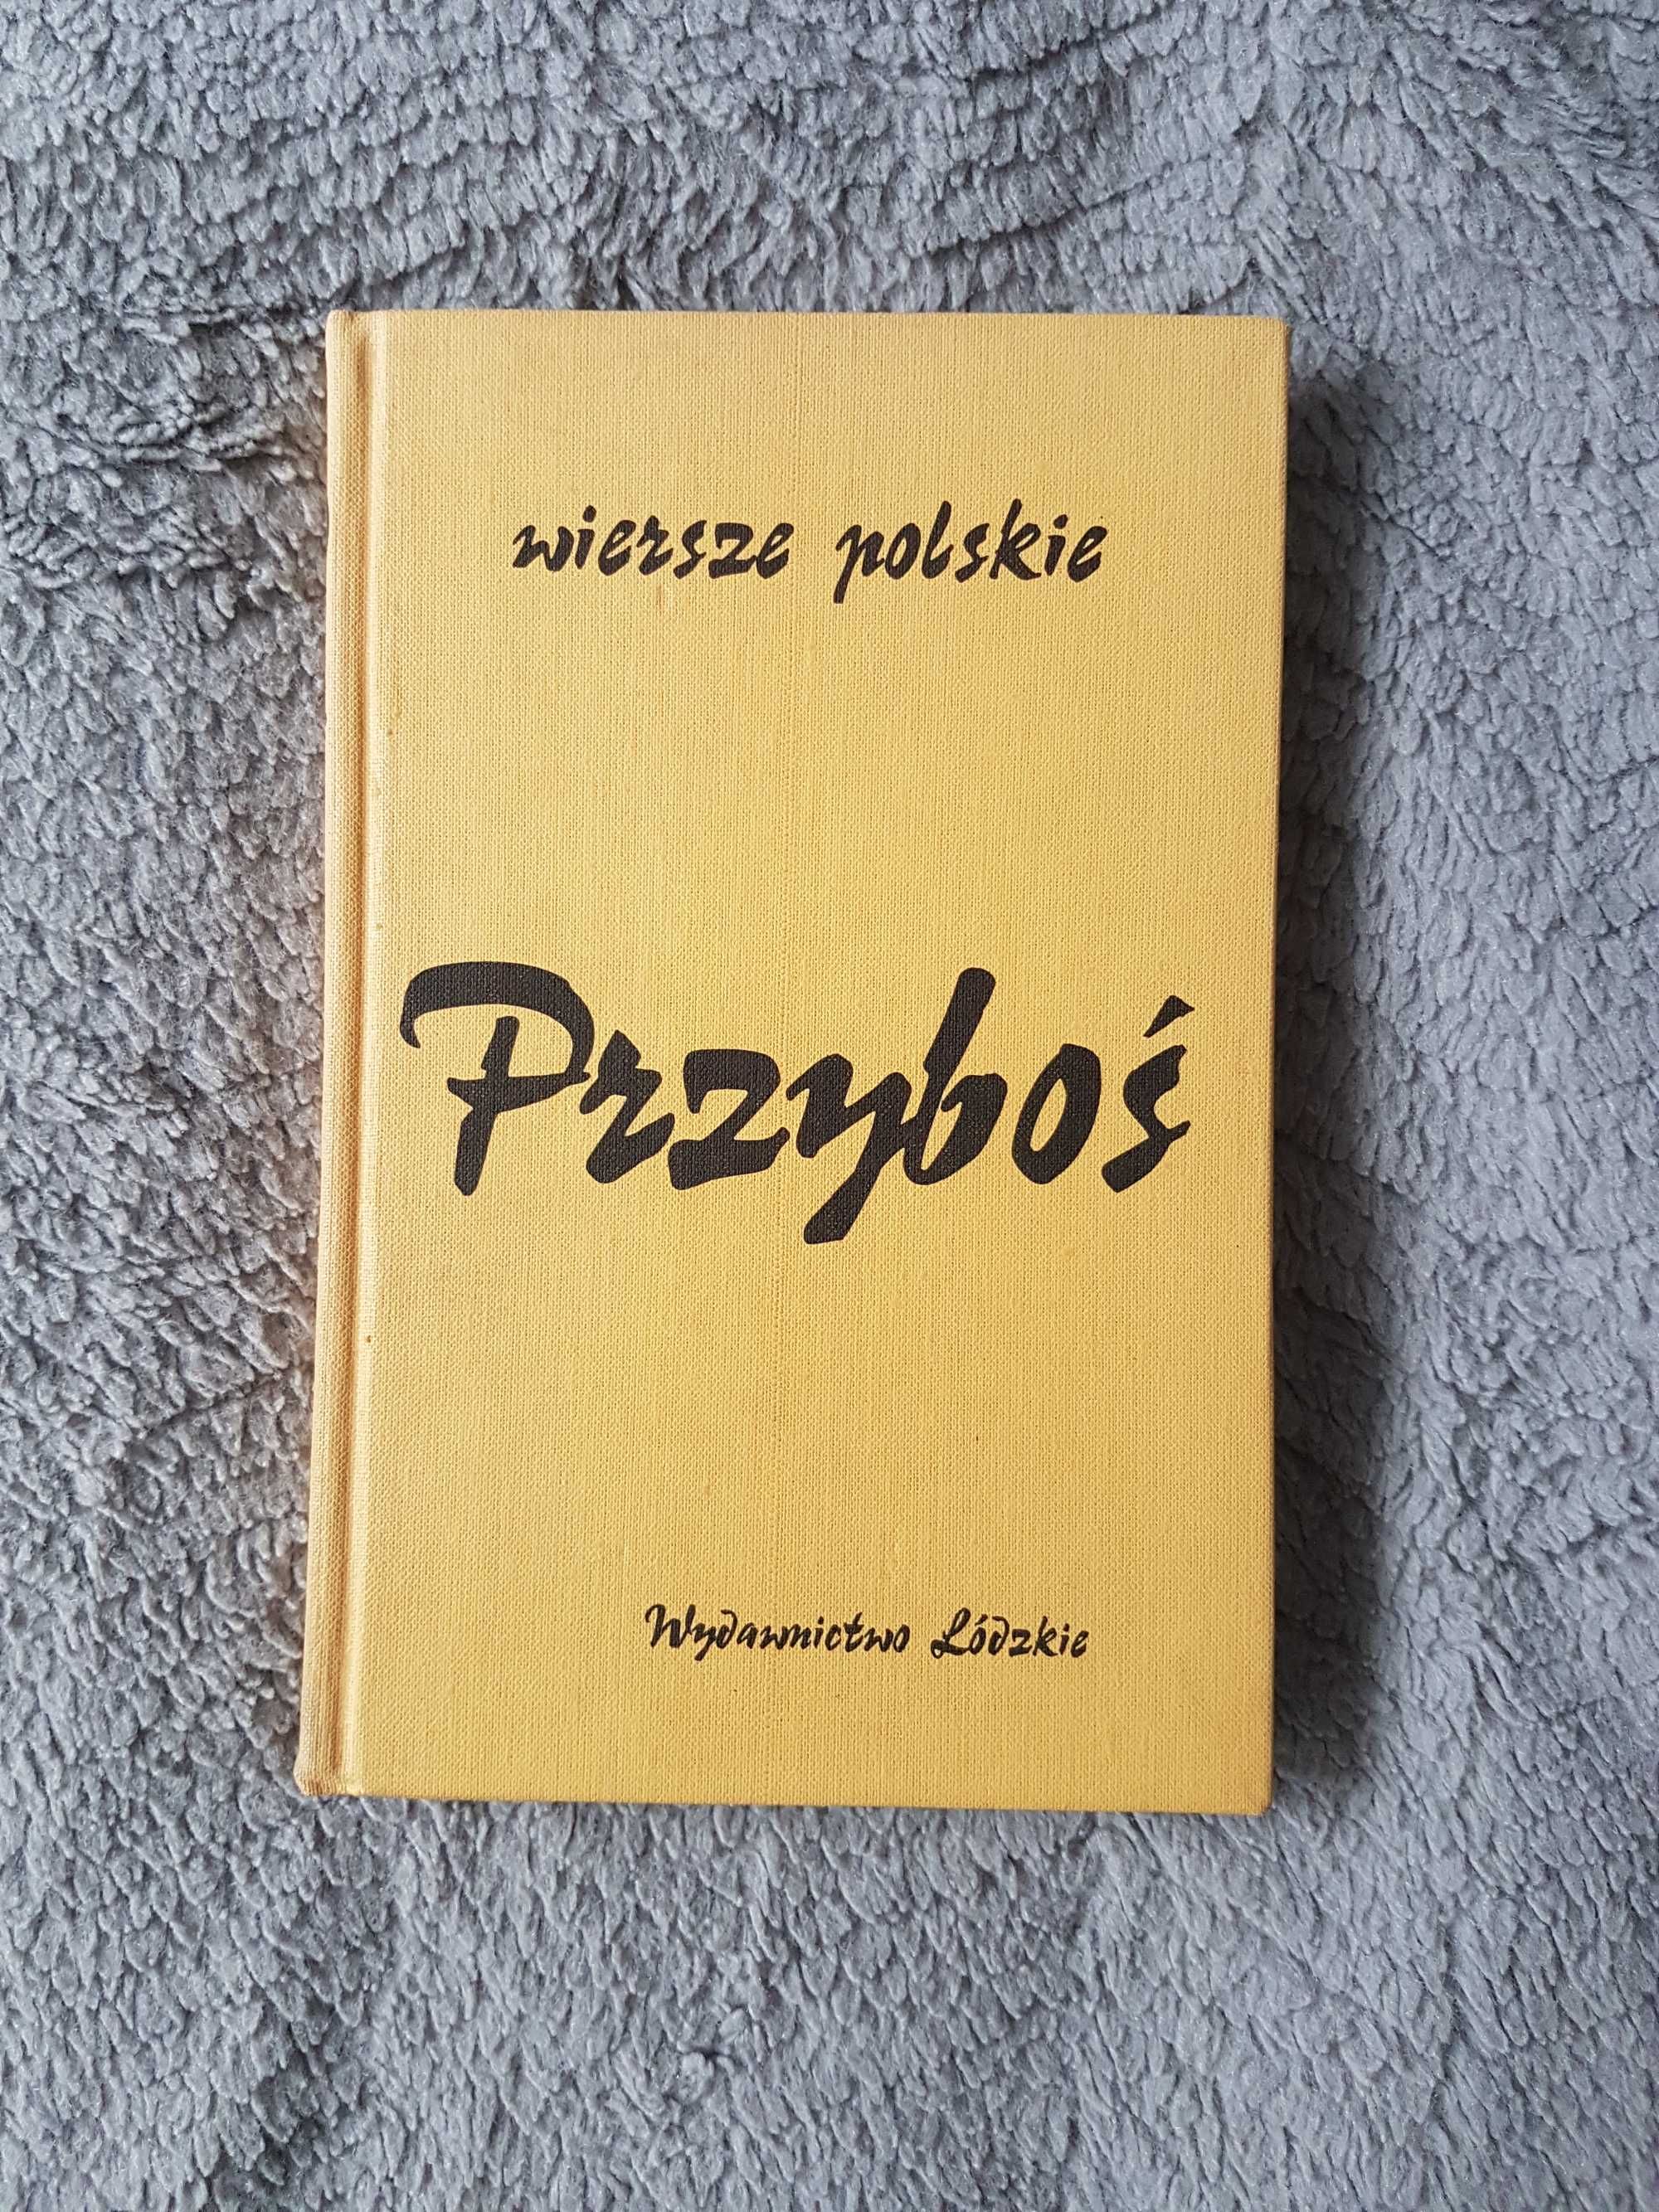 "Wiersze polskie", Julian Przyboś